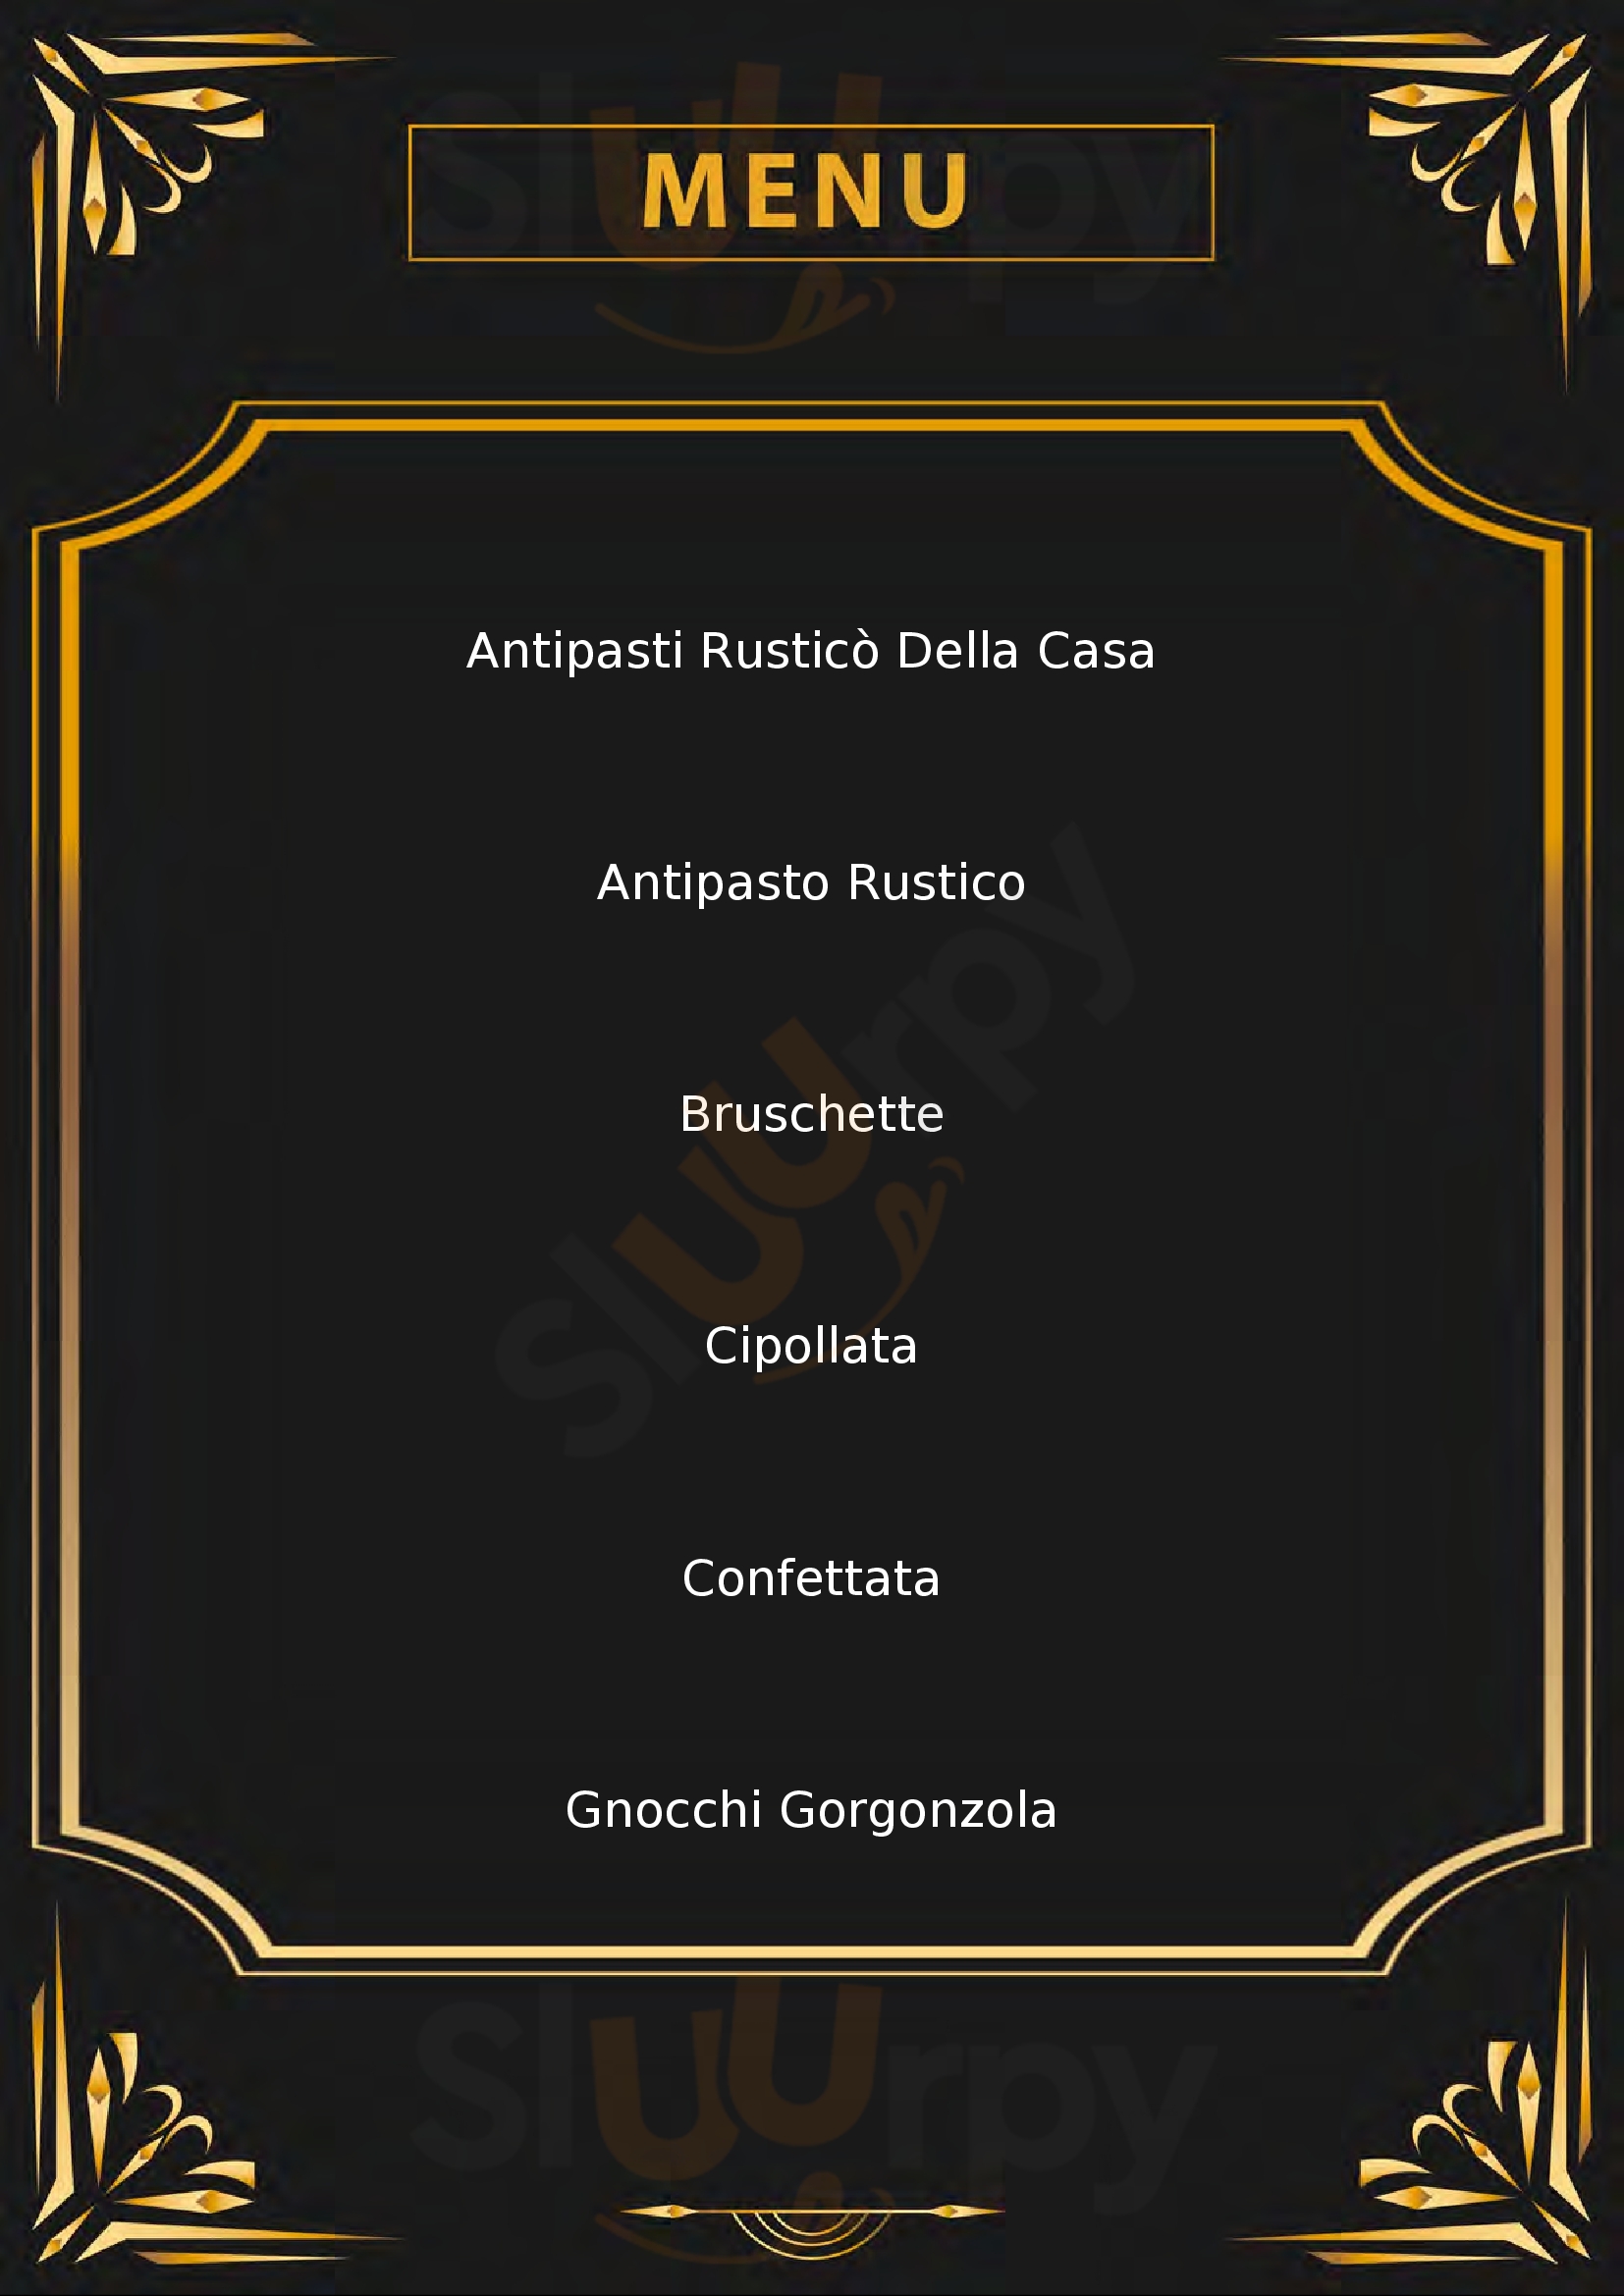 Ristorante Fiorella Vacri menù 1 pagina